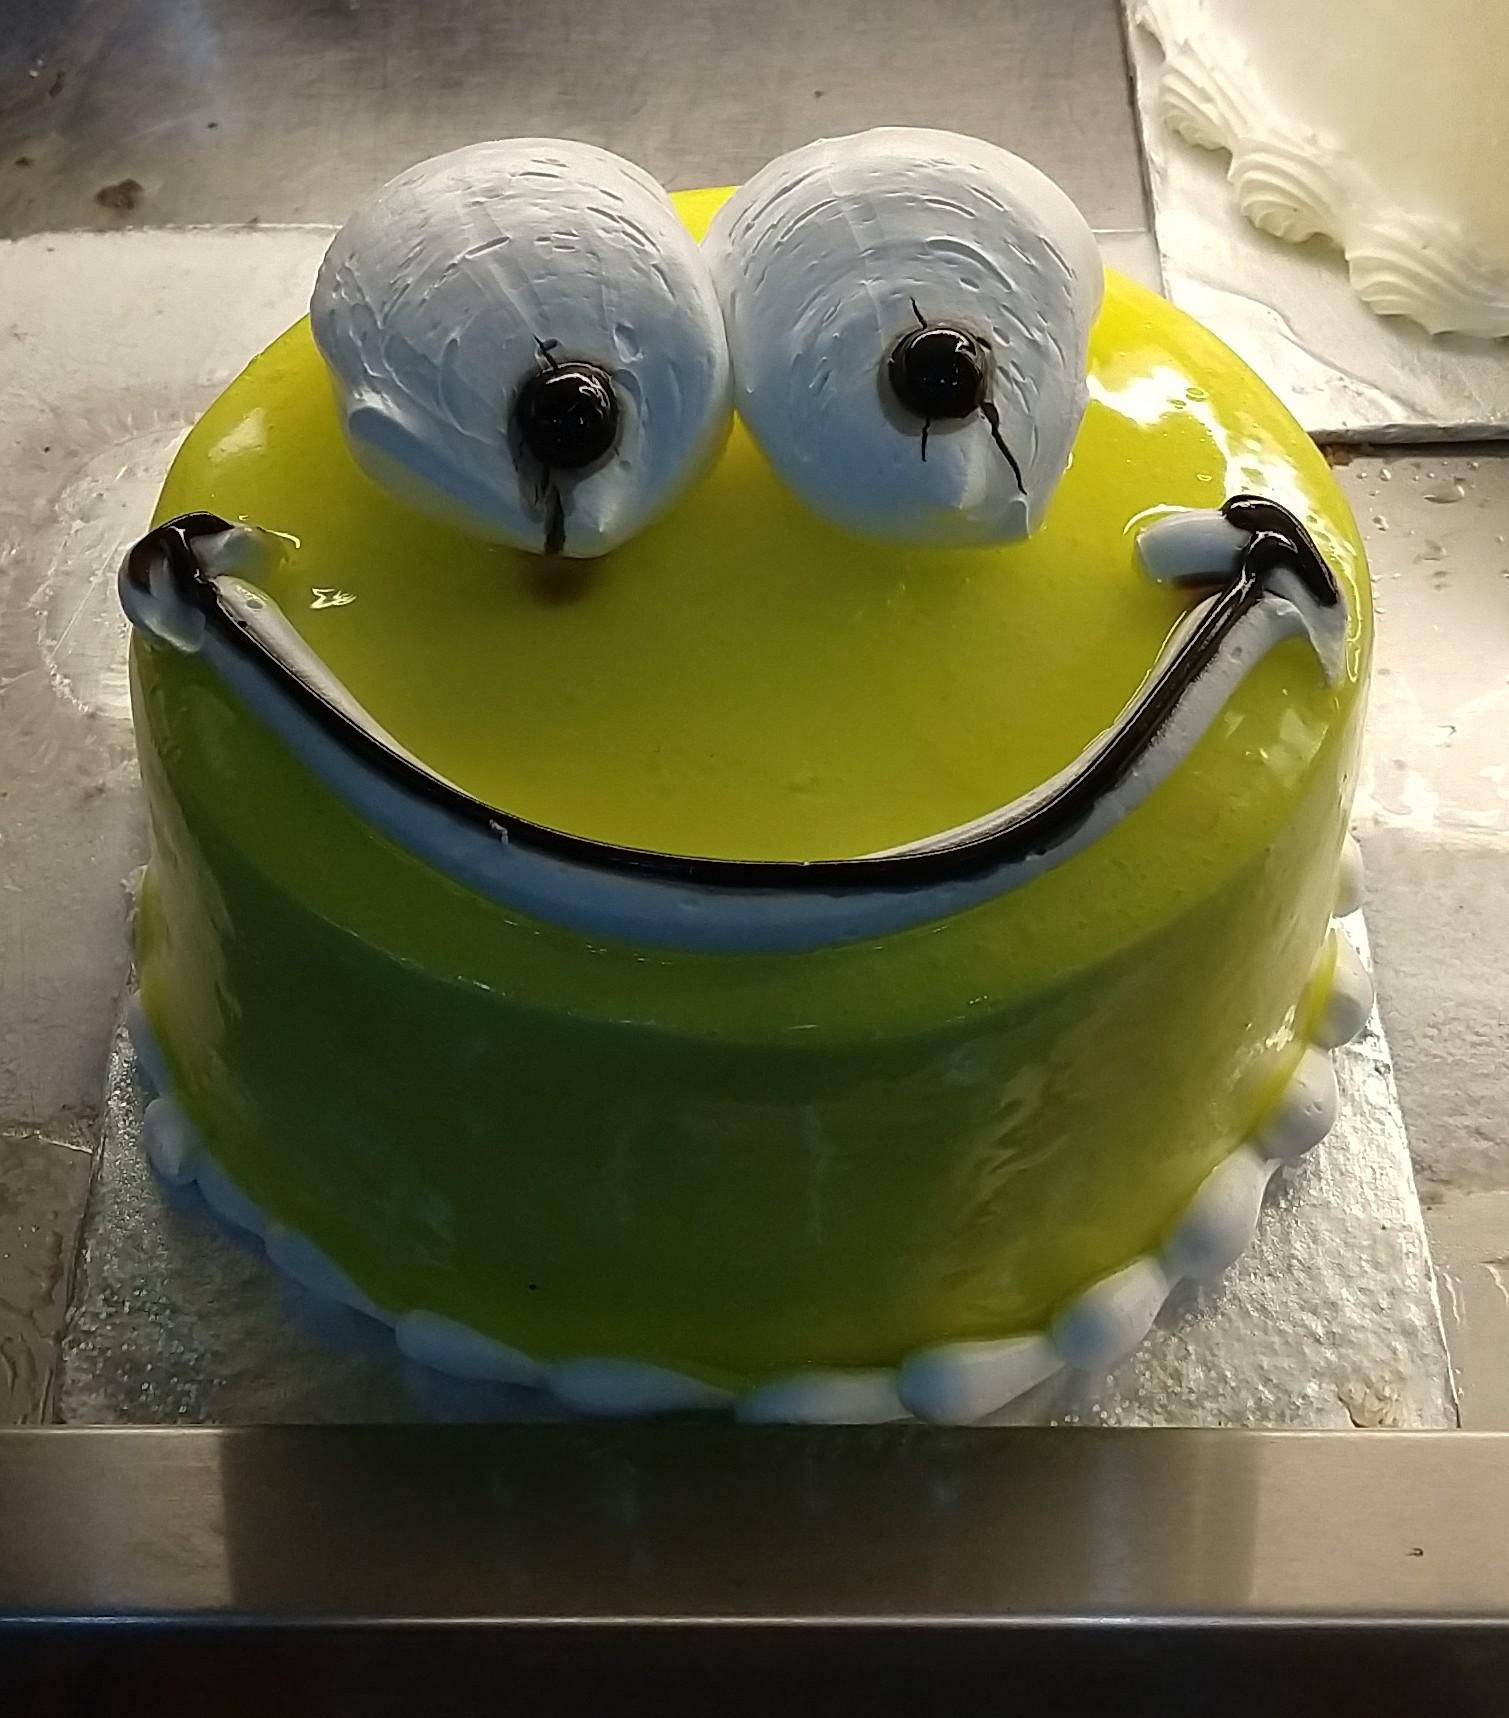 Ce gâteau souriant que j’ai trouvé dans une boulangerie.